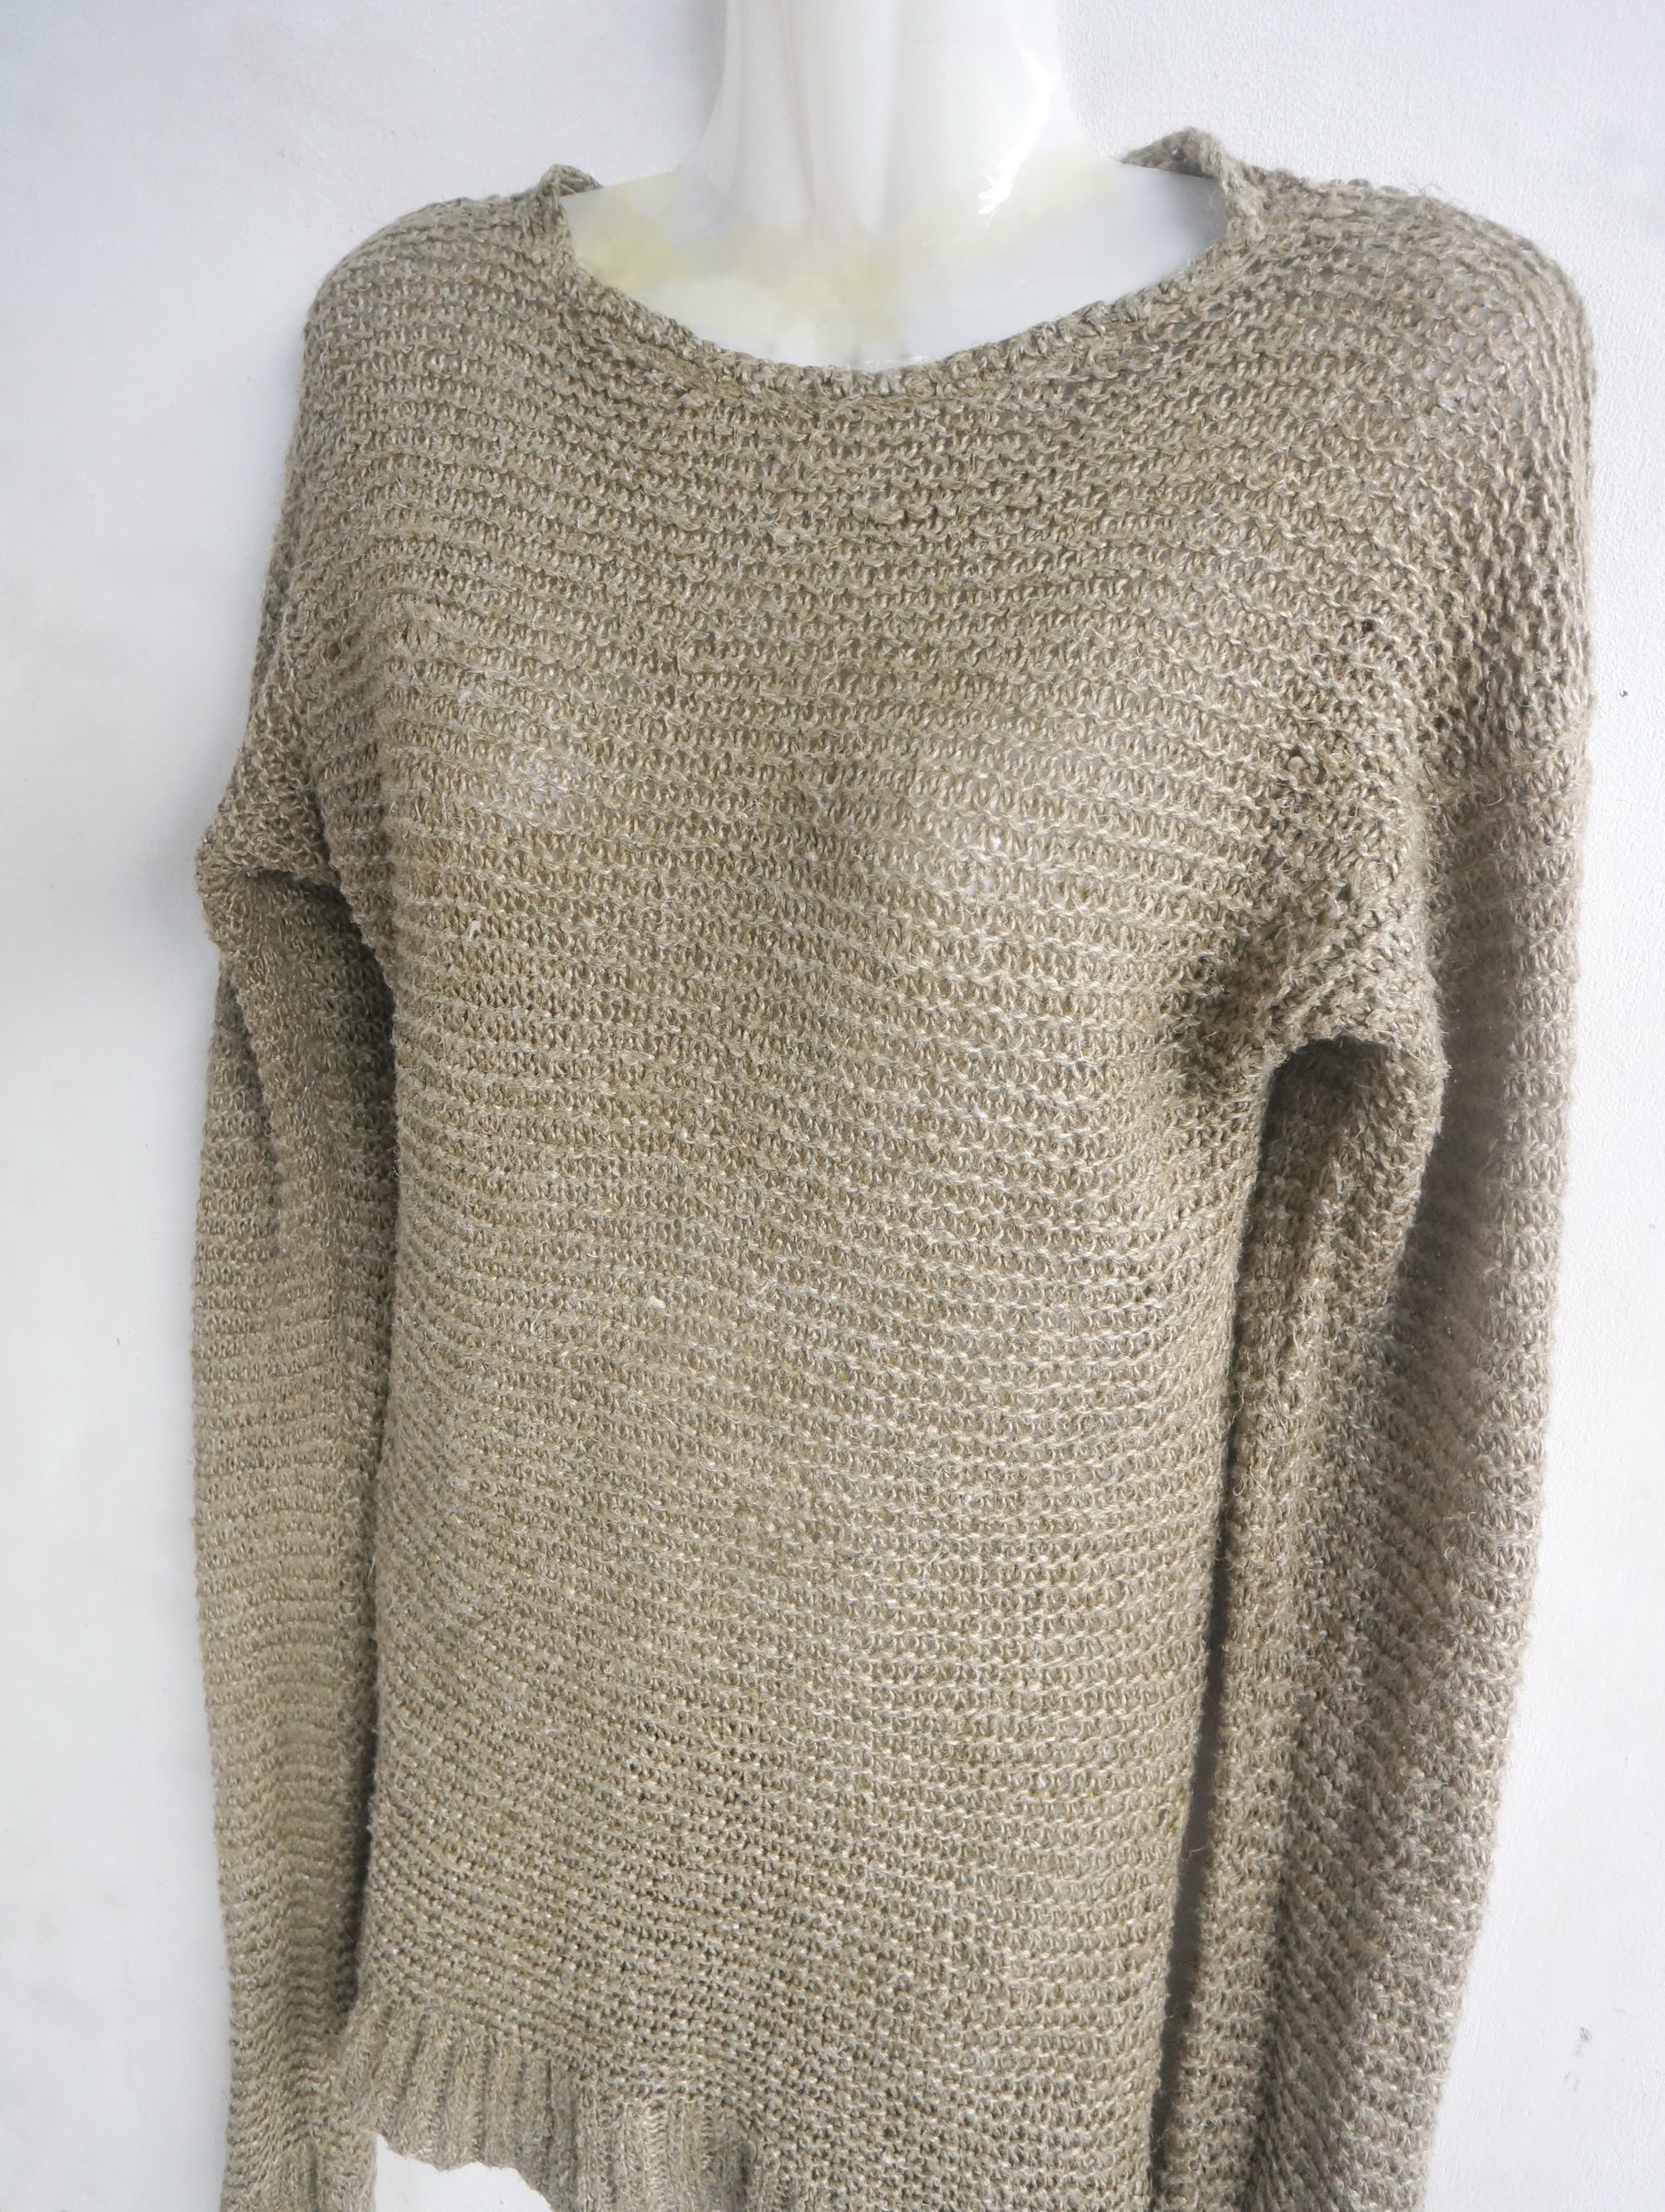 RALPH LAUREN Hemp Knit Pullover Sweater - 3